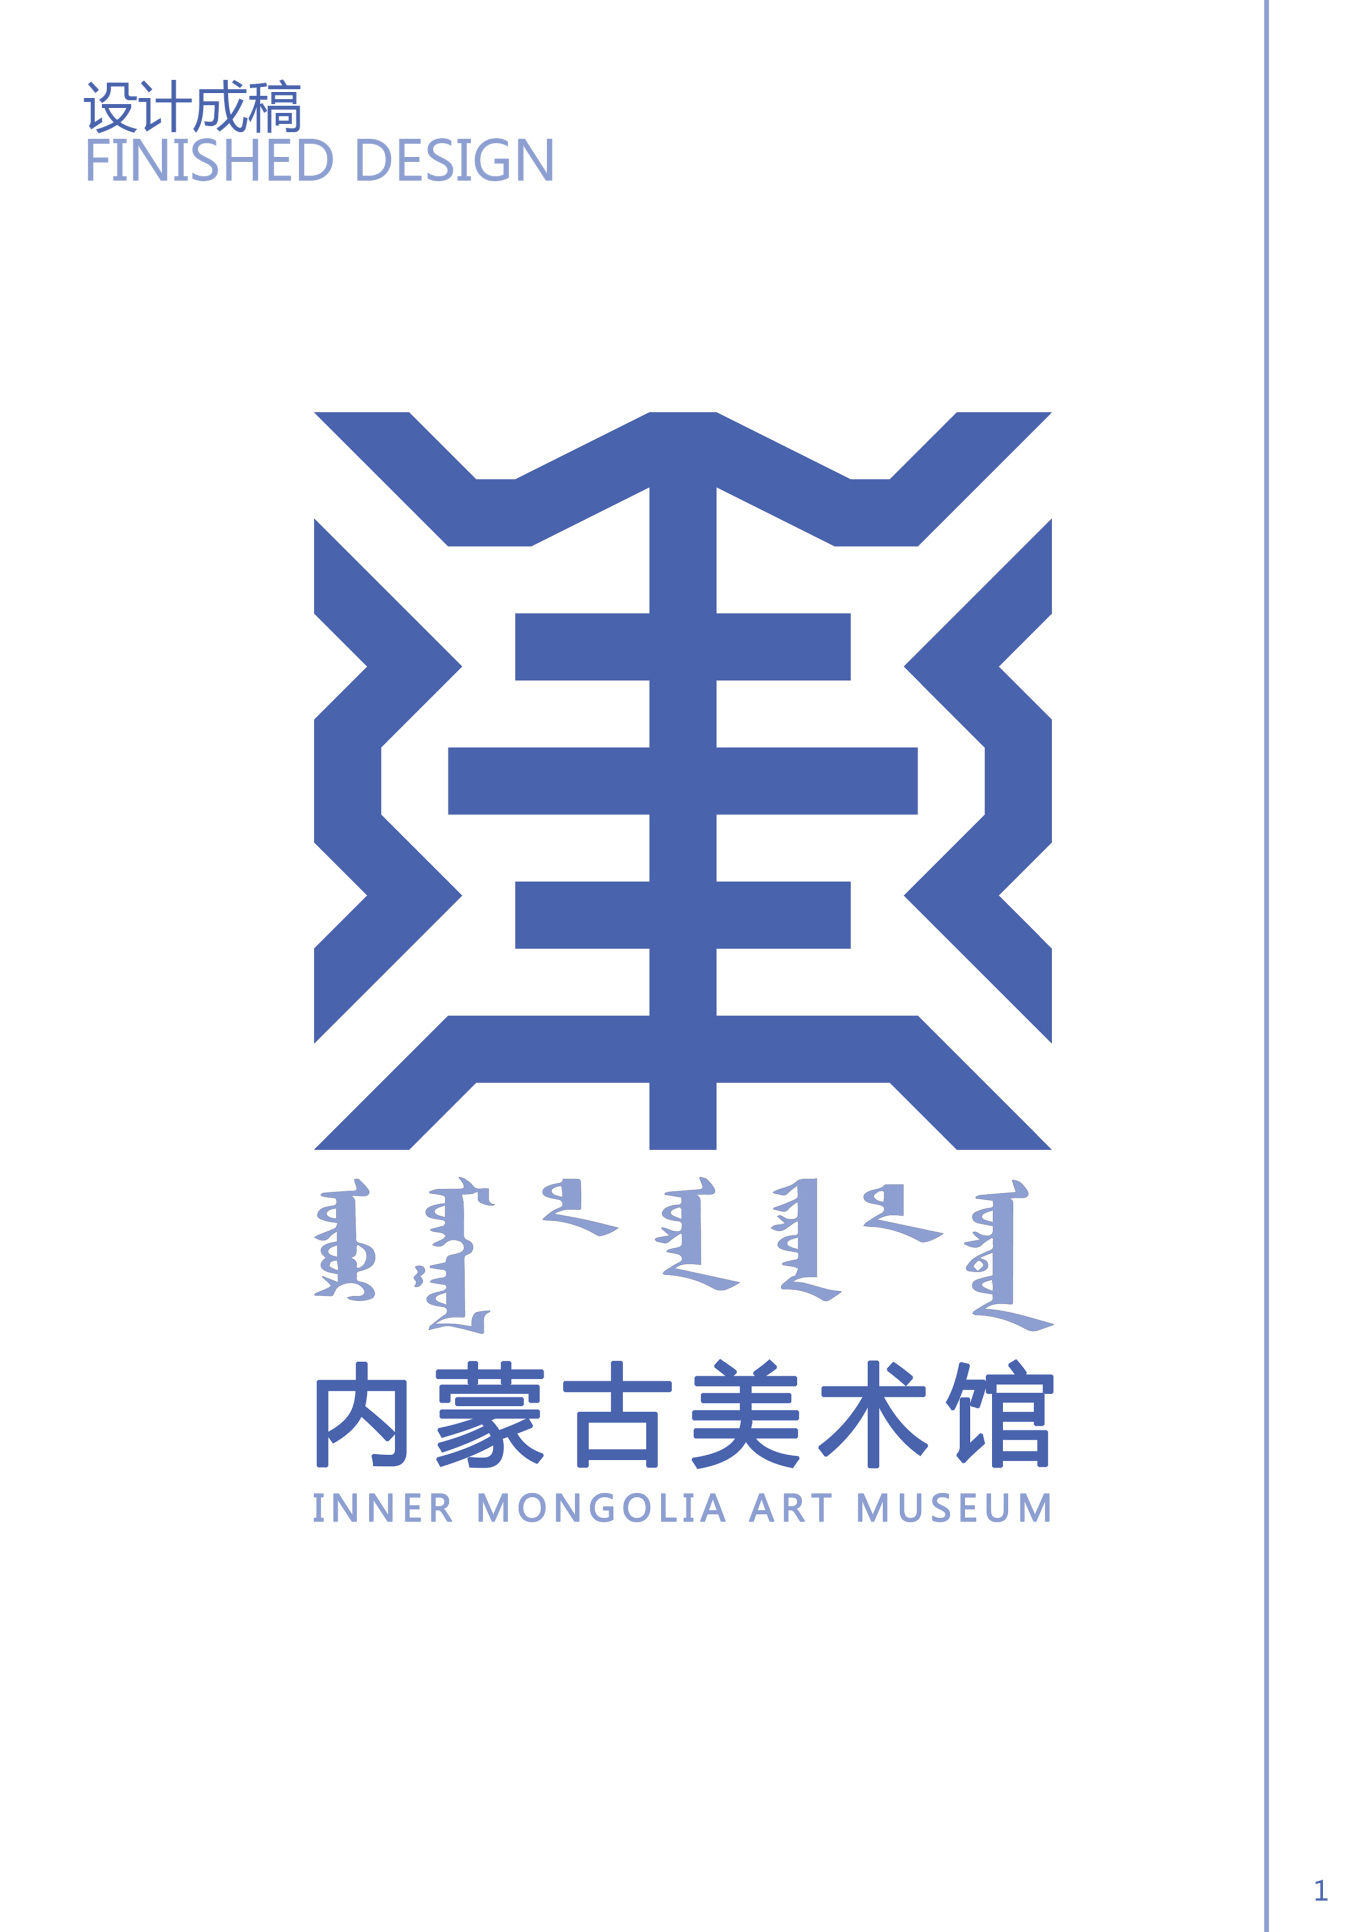 内蒙古美术馆logo图0